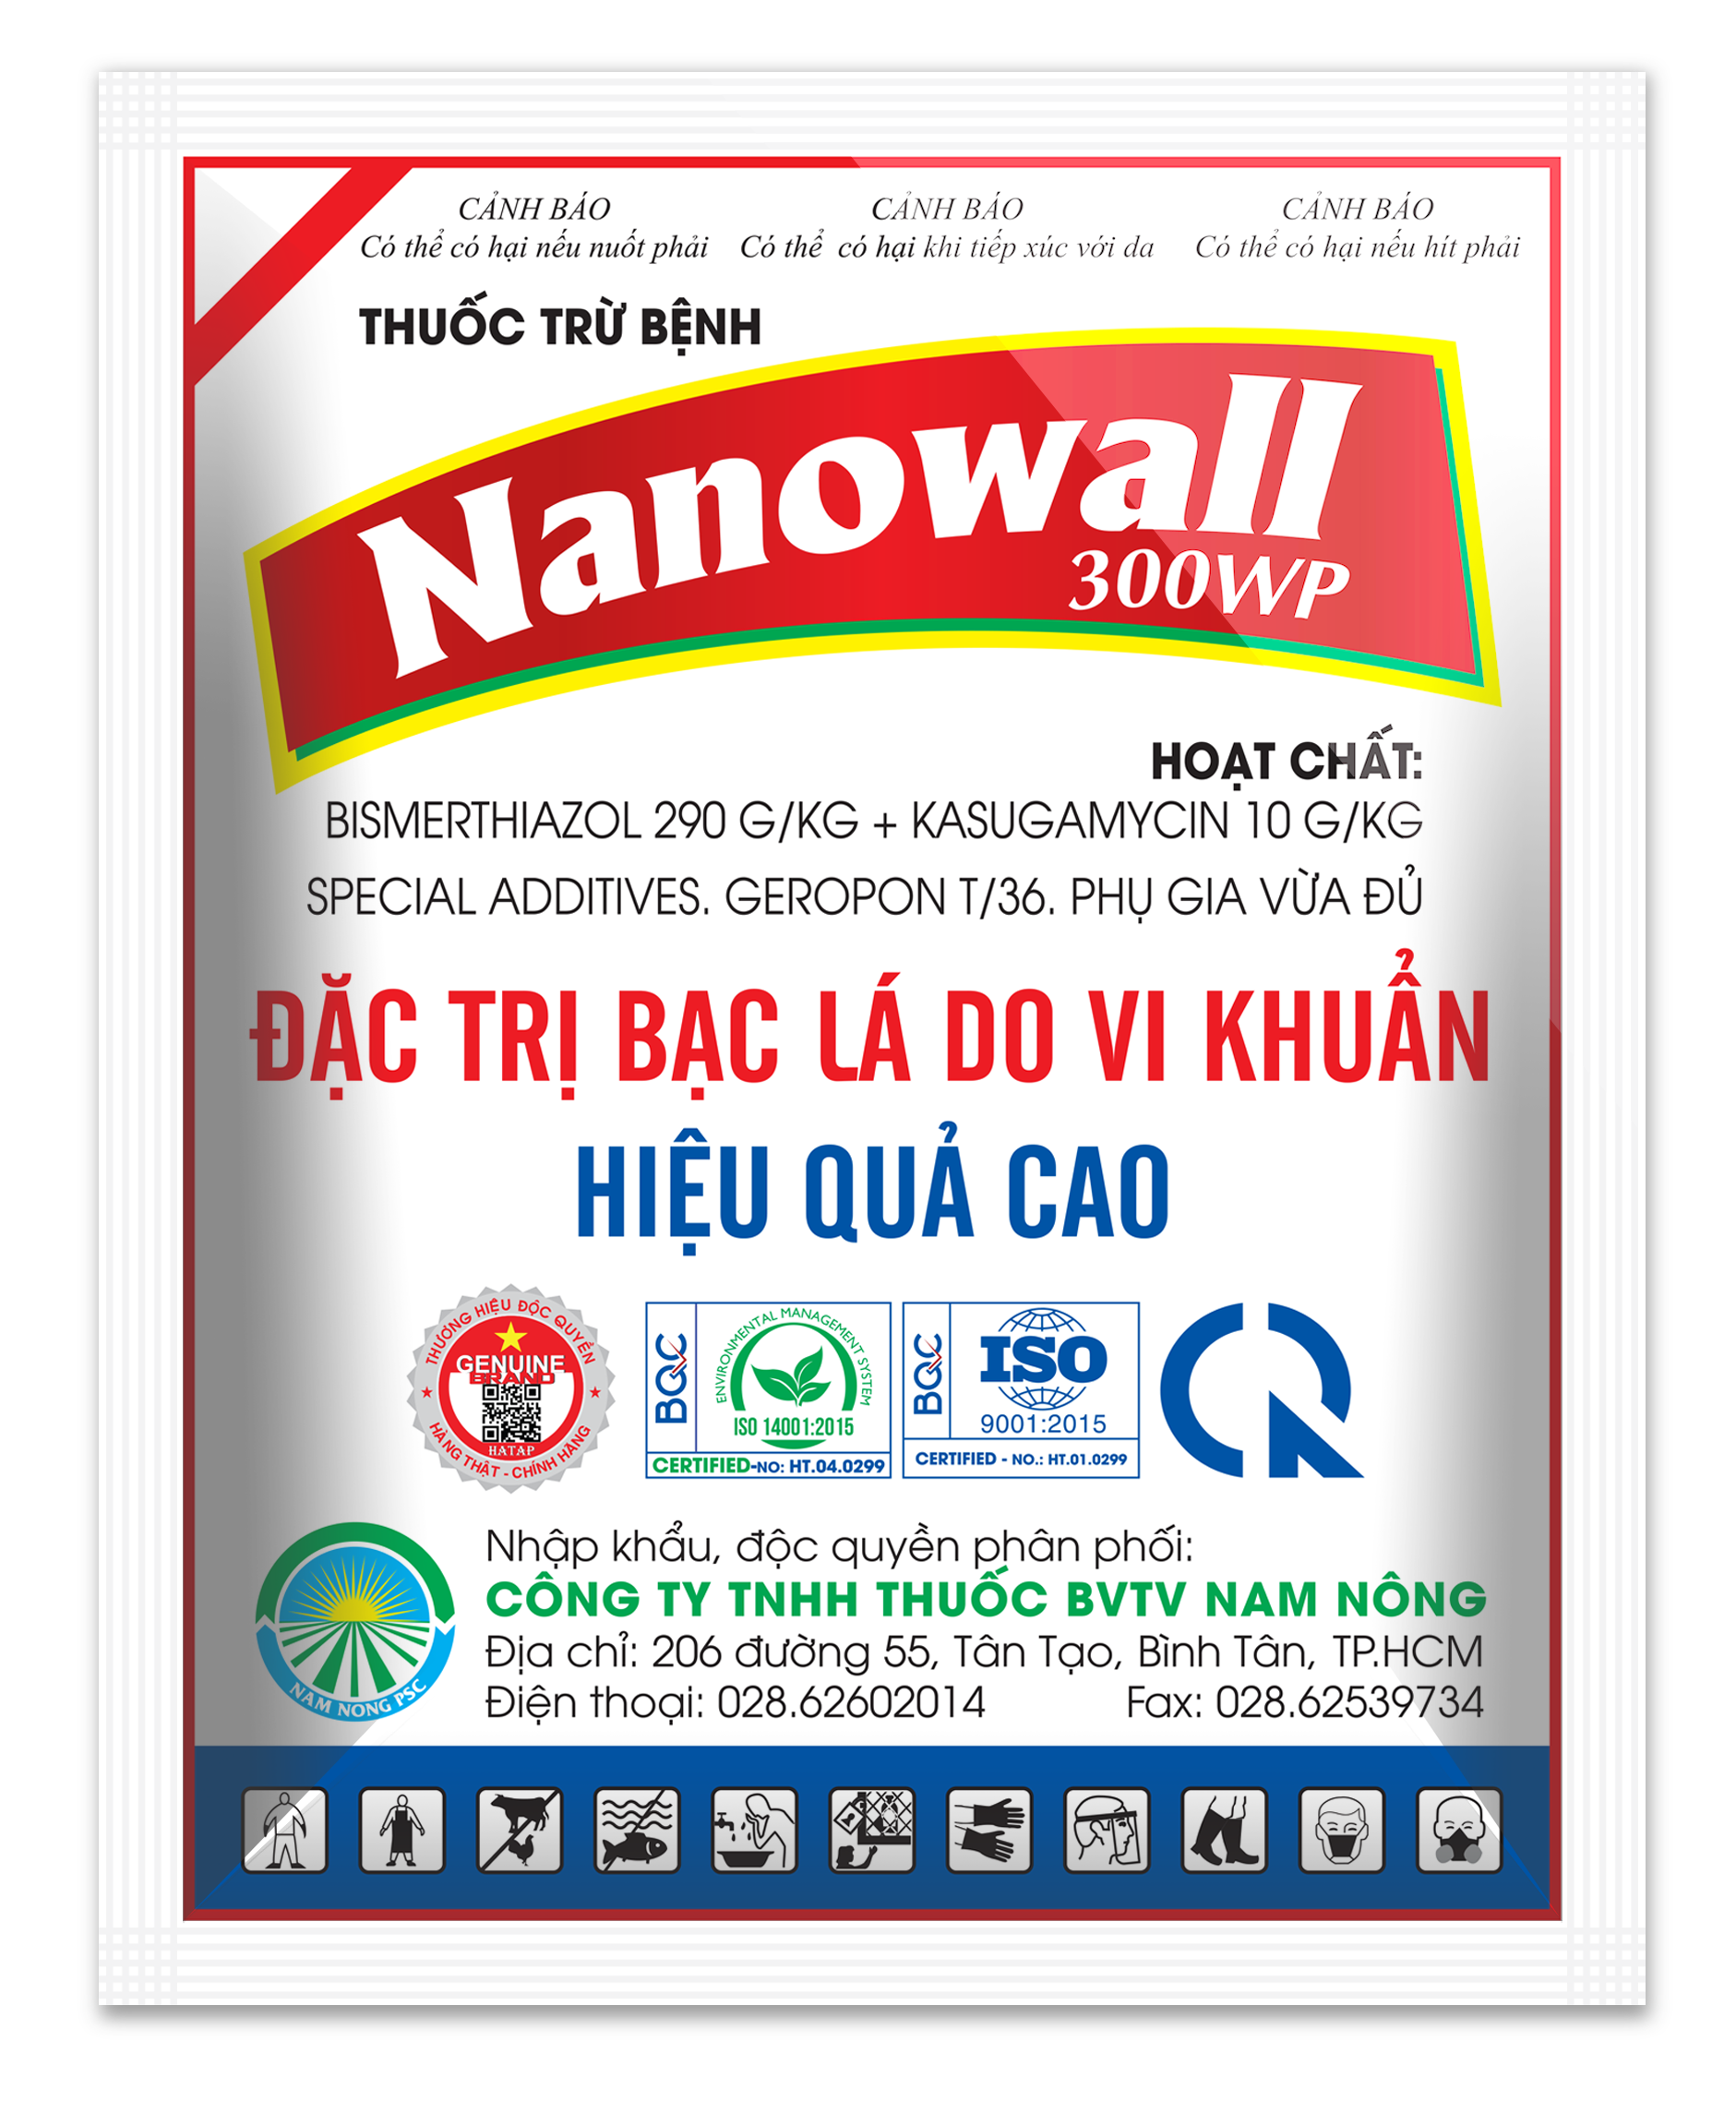 Nanowall 300 WP